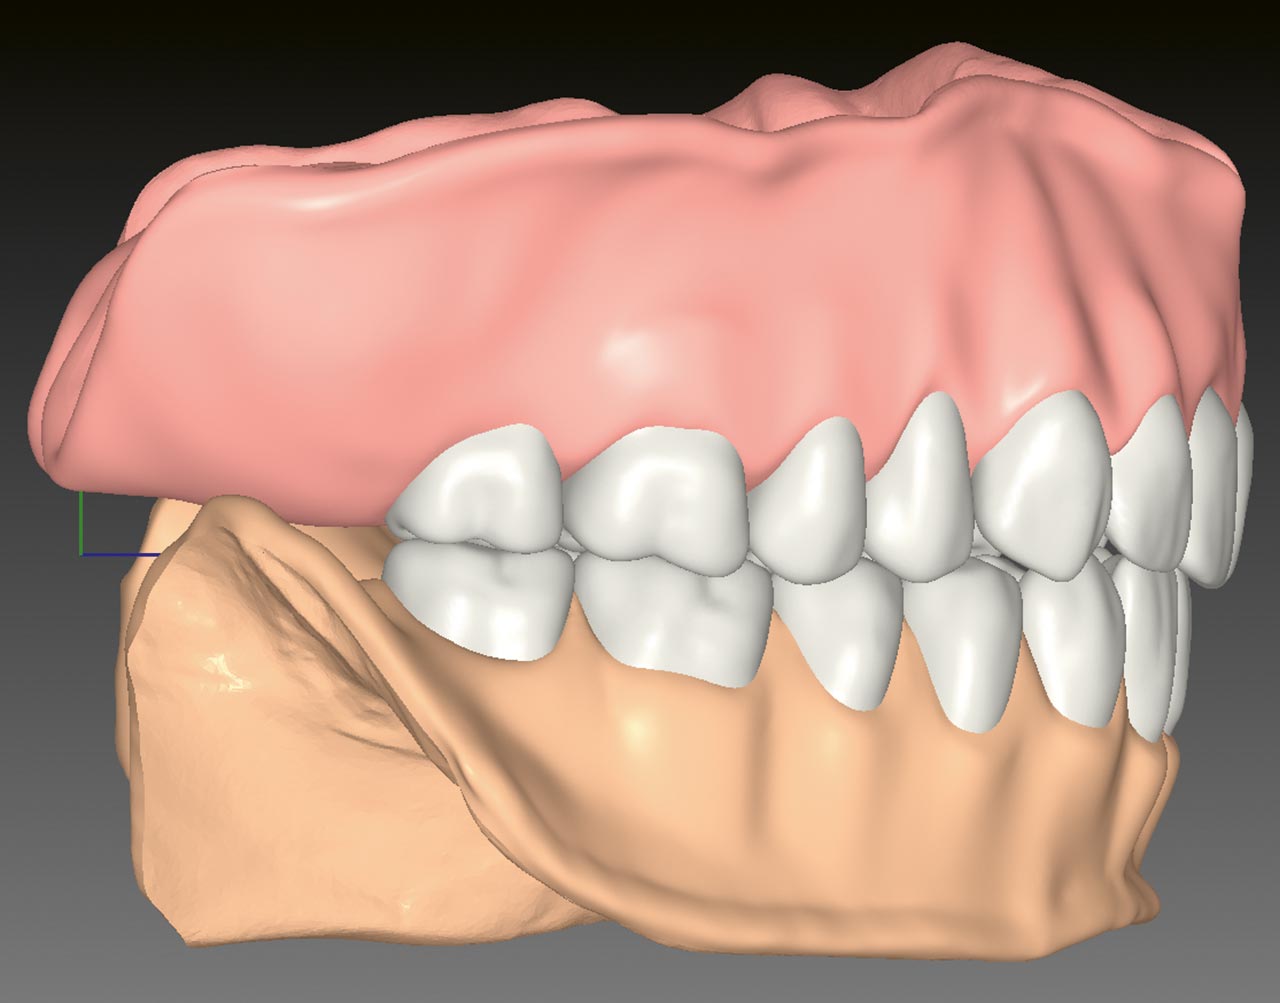 Abb. 9 Rechtsaterale Ansicht des digitalen Entwurfs der komplettierten Prothesen mit Zahnfleischstrukturen. 